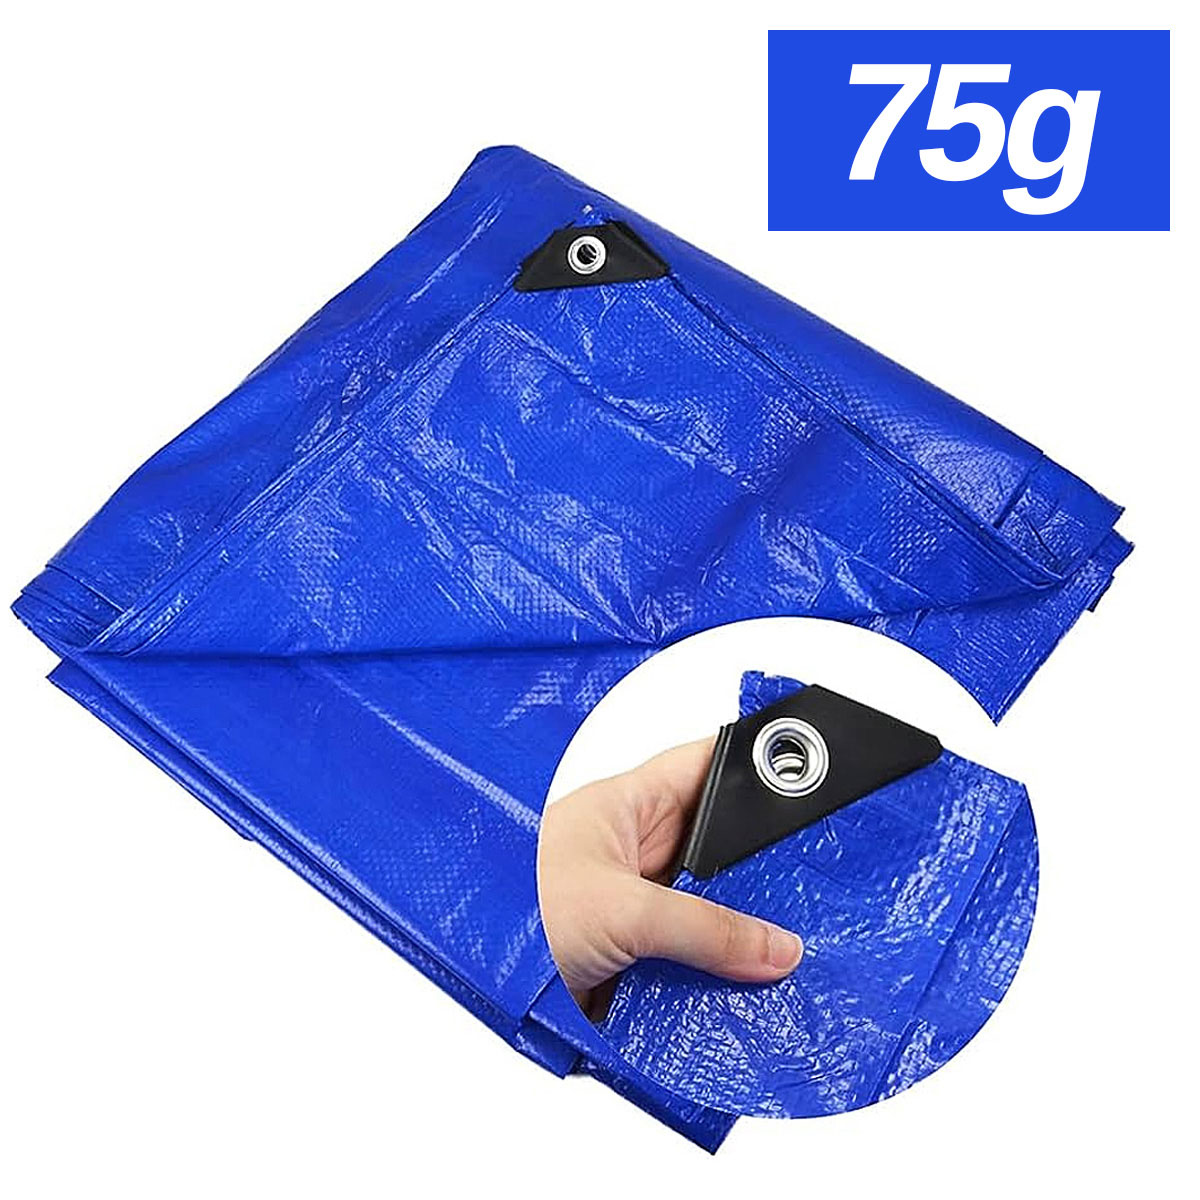 Lona Carreteiro de Polietileno Leve Impermeável Proteção UV 75g/m2 Azul - Starfer